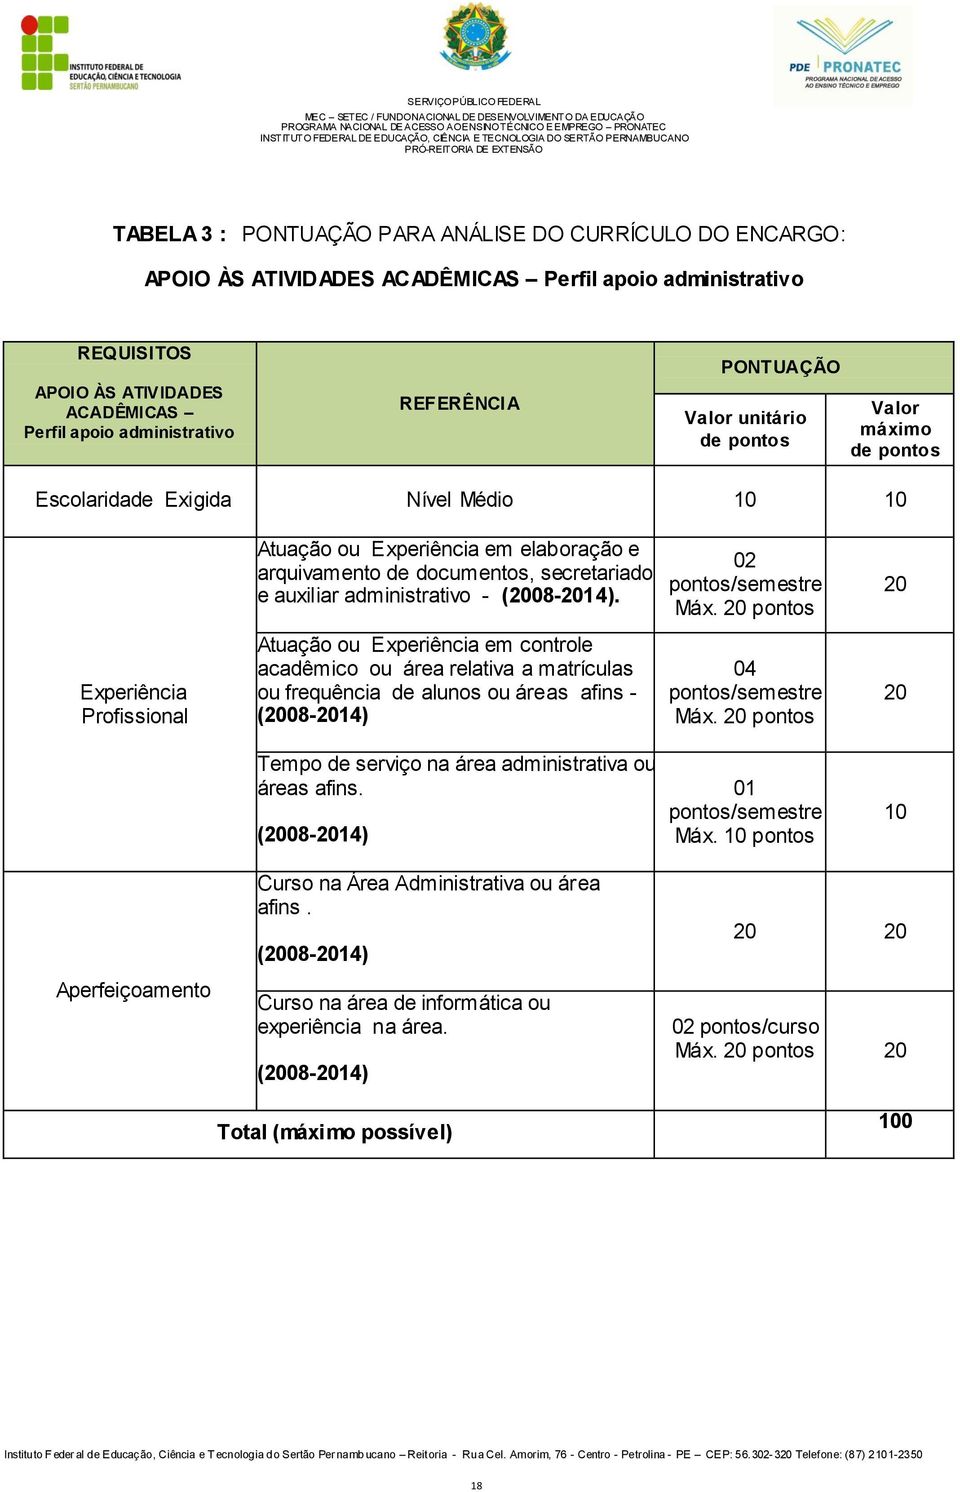 administrativo - (2008-2014). 02 pontos/semestre Máx.